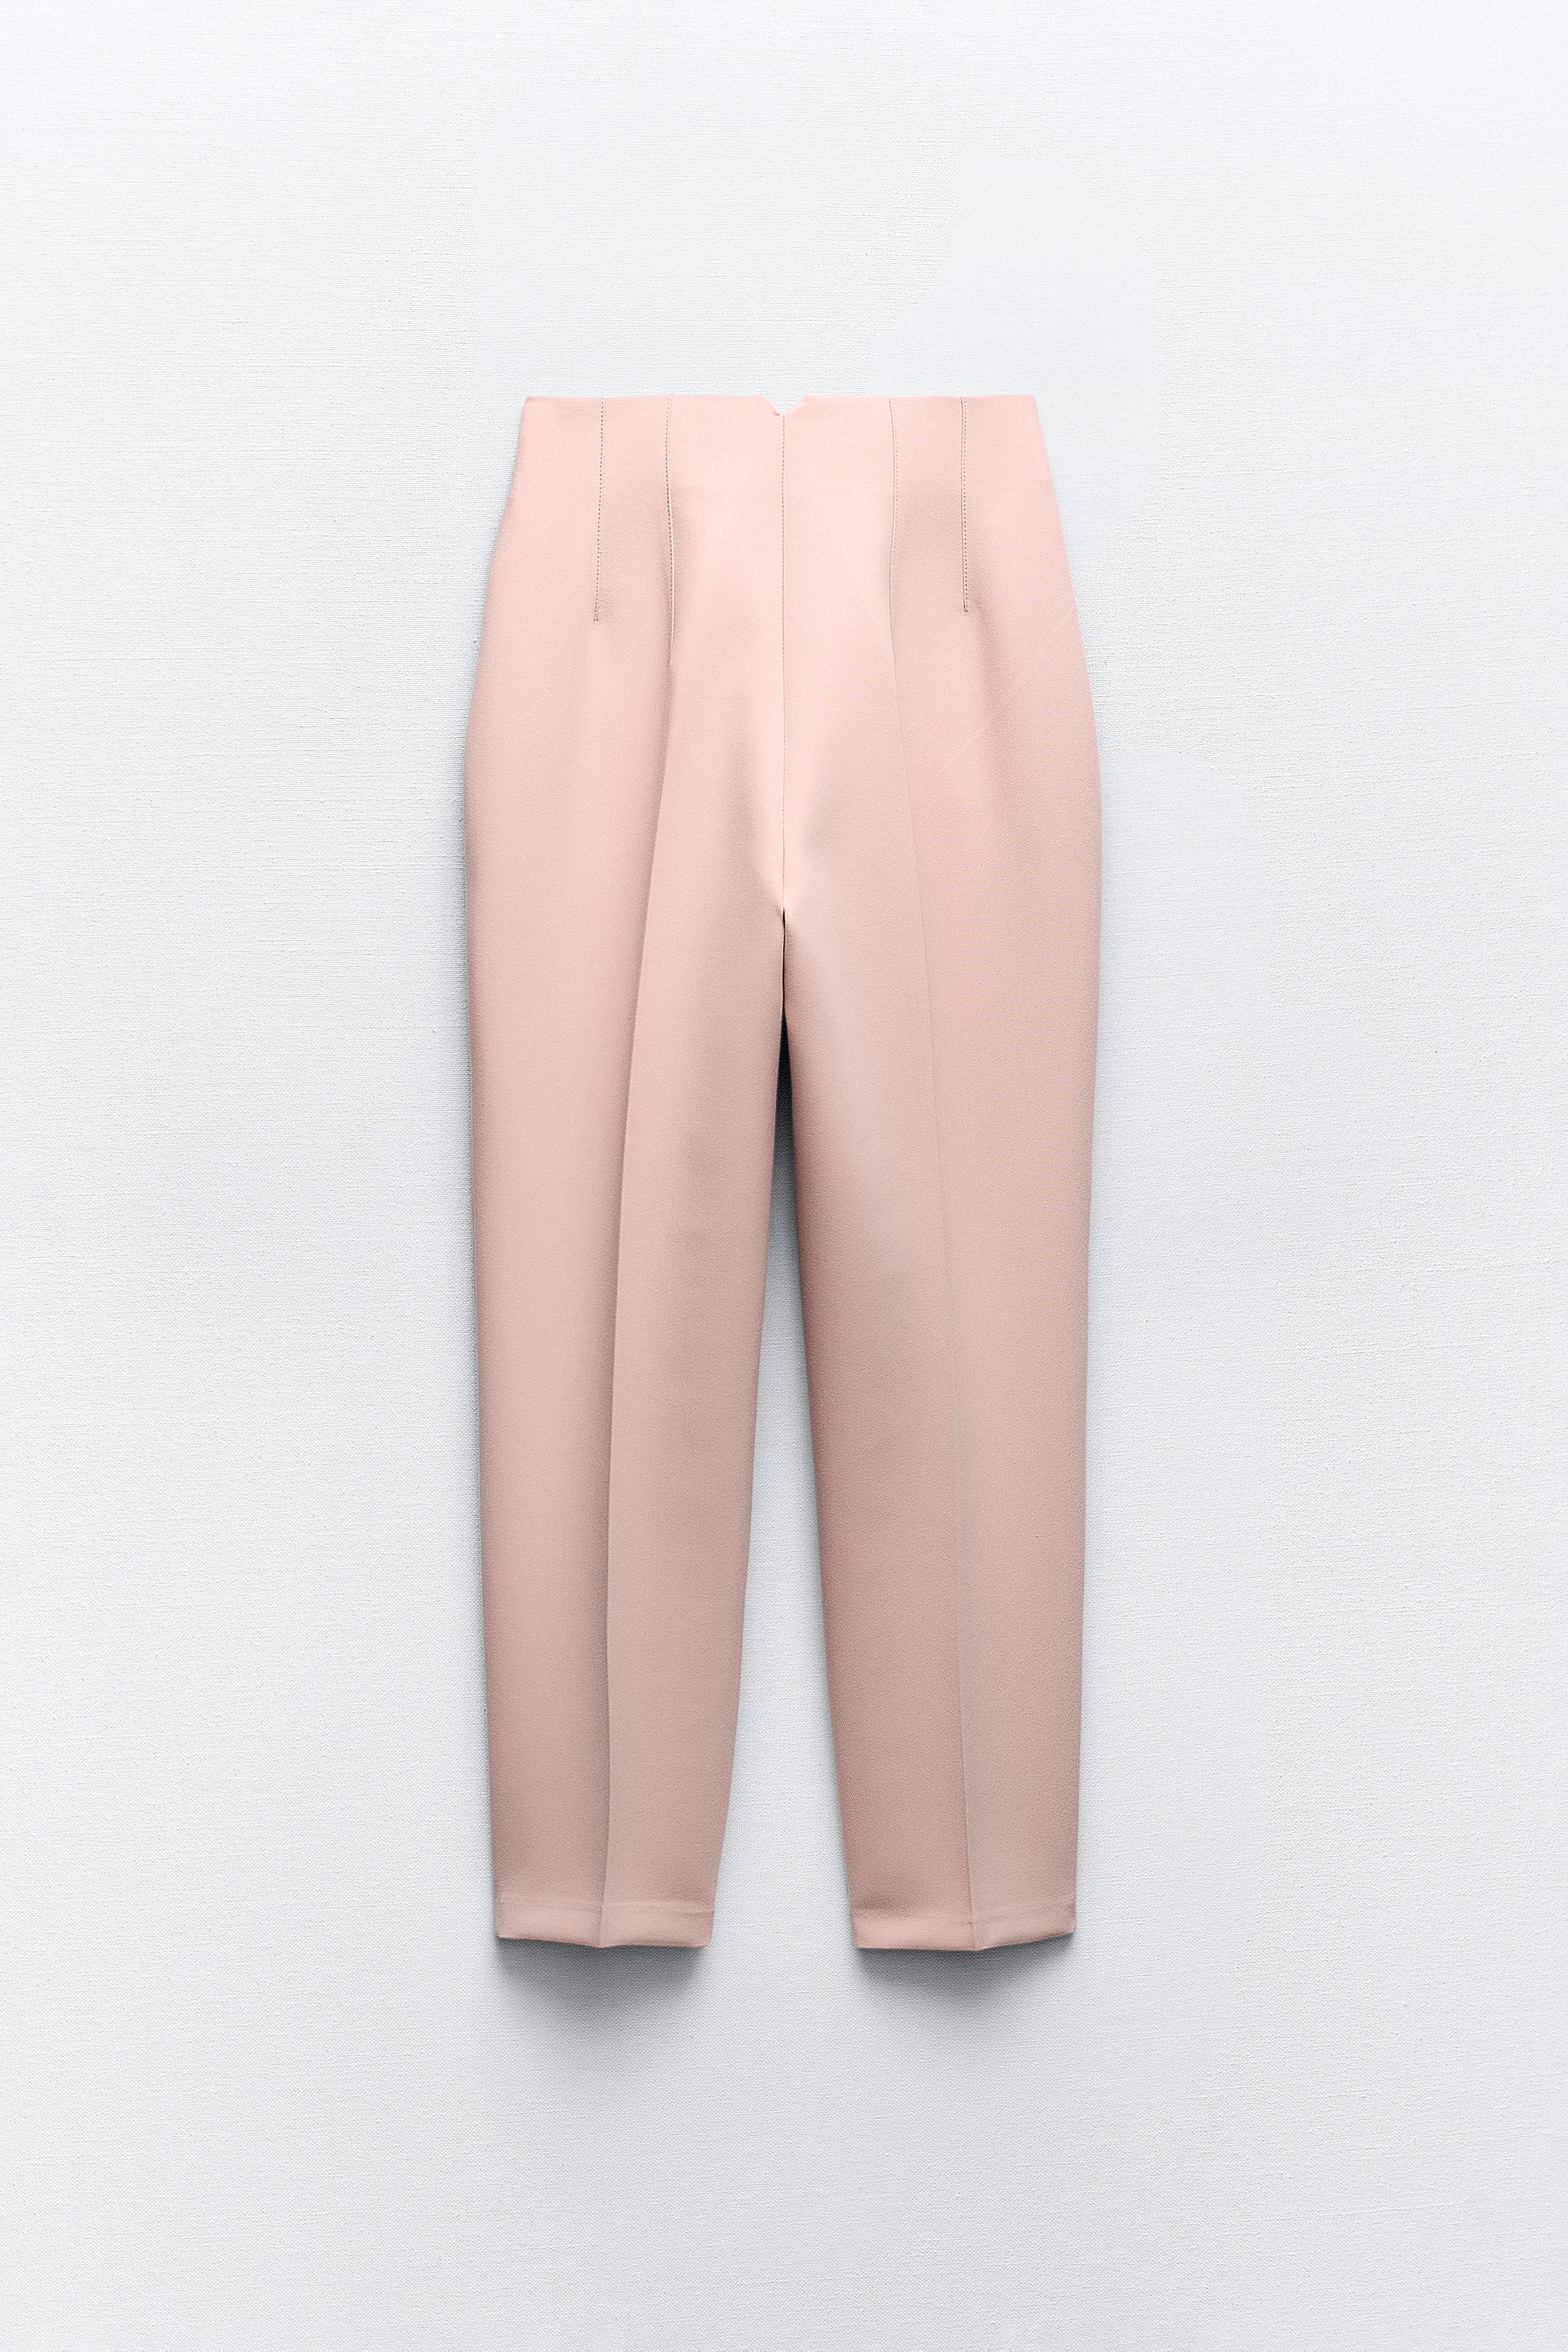 New ZARA Women's Size Xs Pink Linen Blend High Waisted Pleated